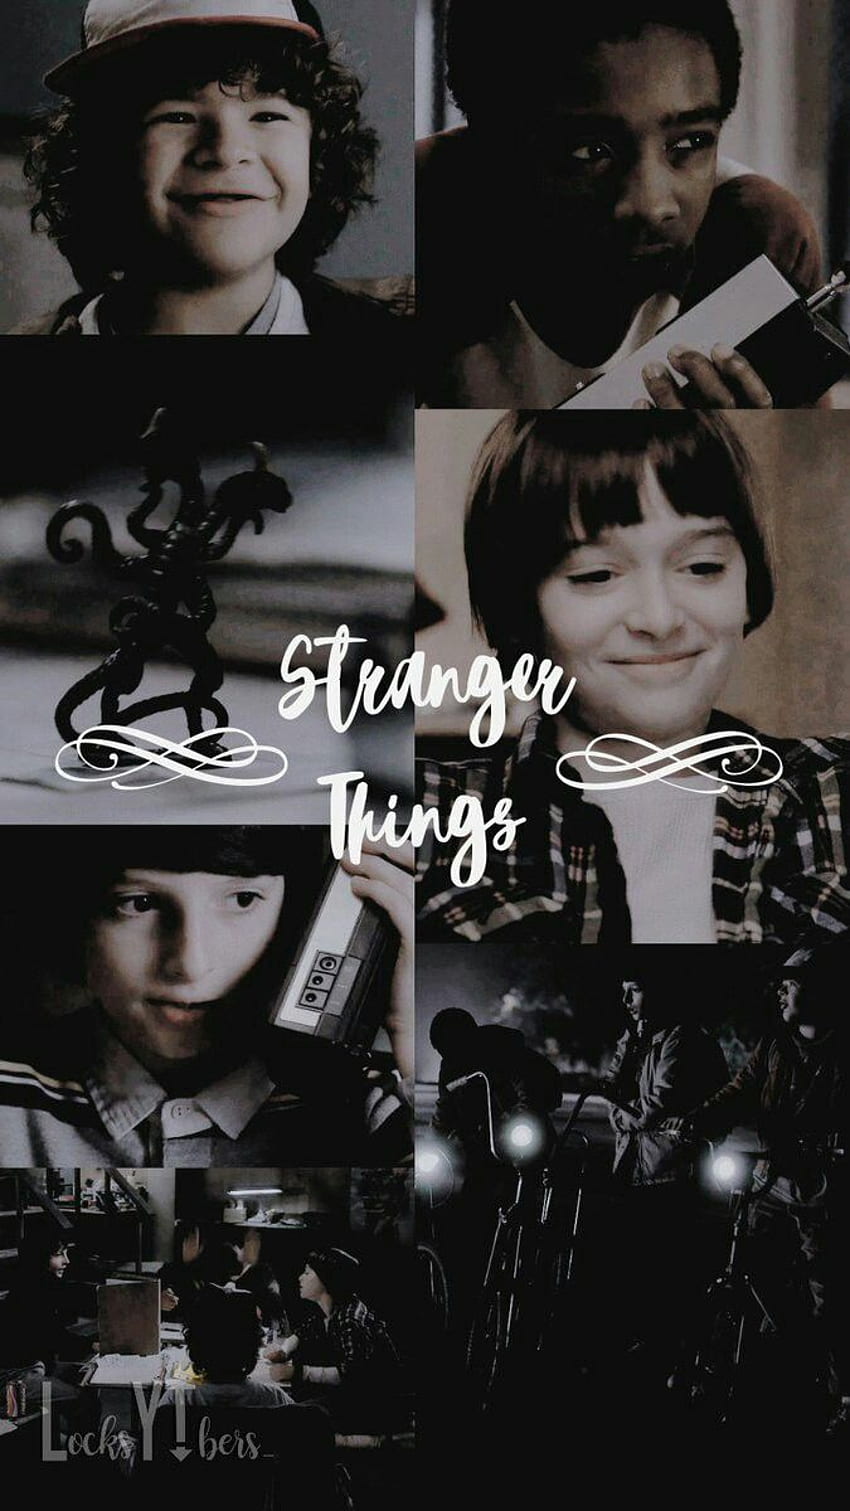 Dustin Stranger Things, Aesthetic Stranger Things HD phone wallpaper ...